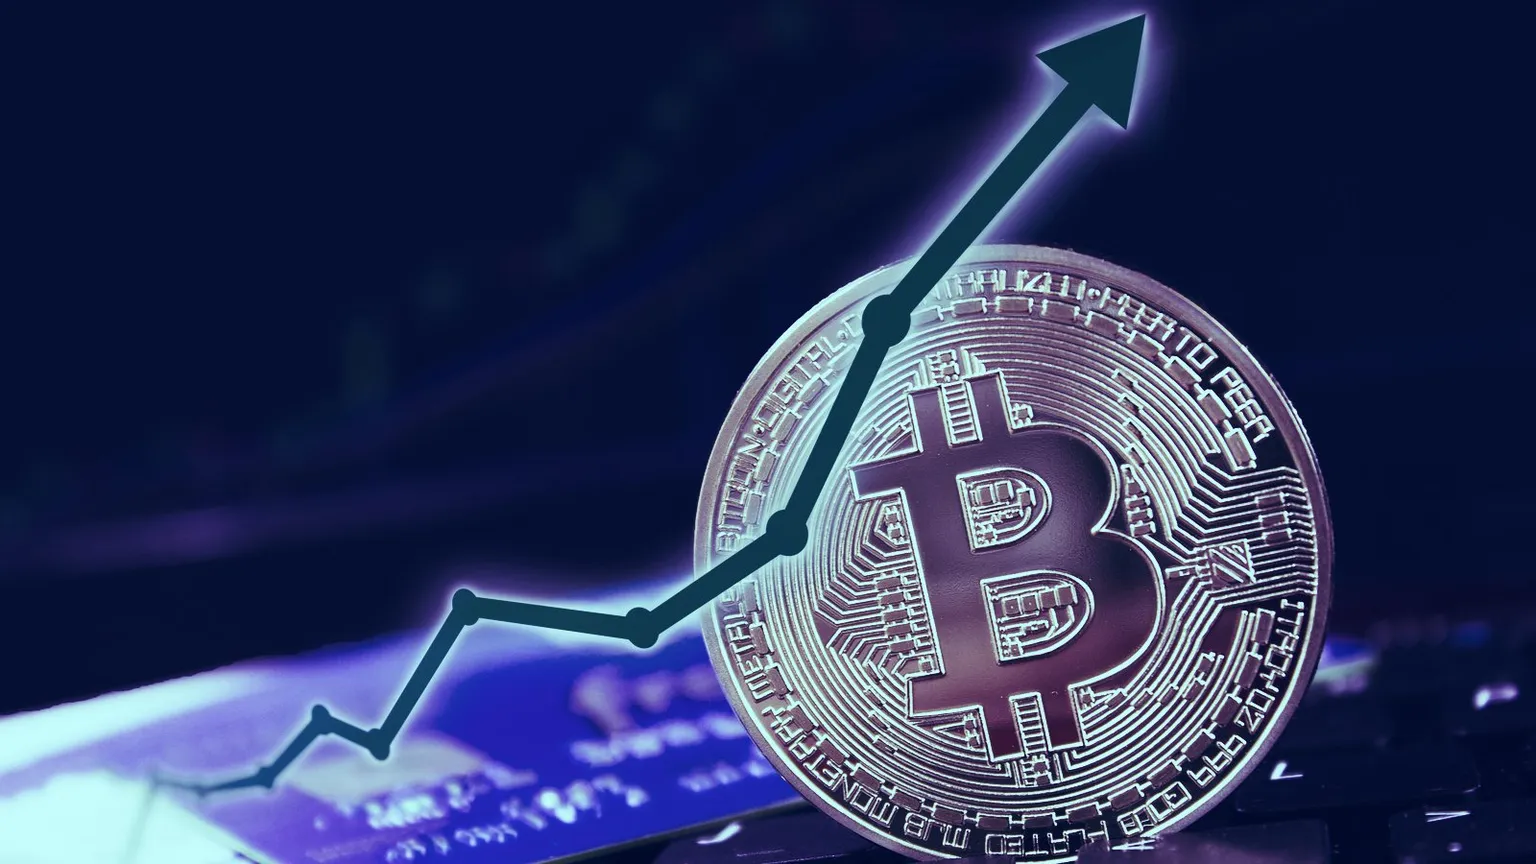 El precio de Bitcoin ha subido en los últimos días. Imagen: Shutterstock